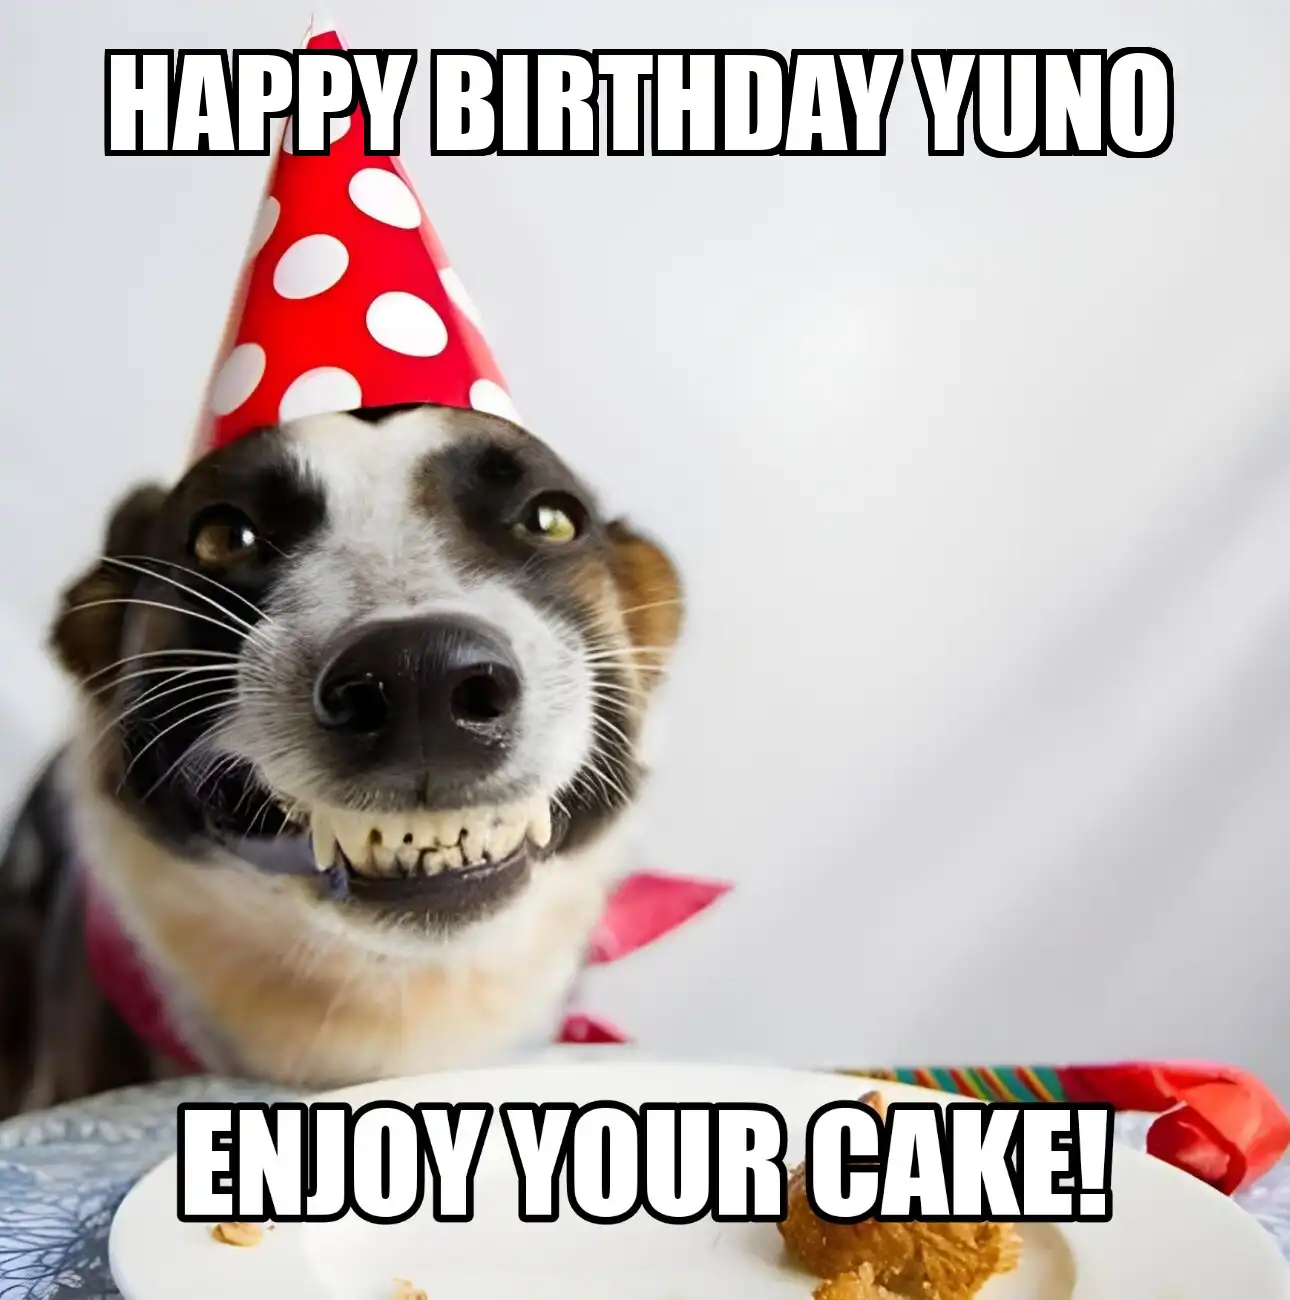 Happy Birthday Yuno Enjoy Your Cake Dog Meme